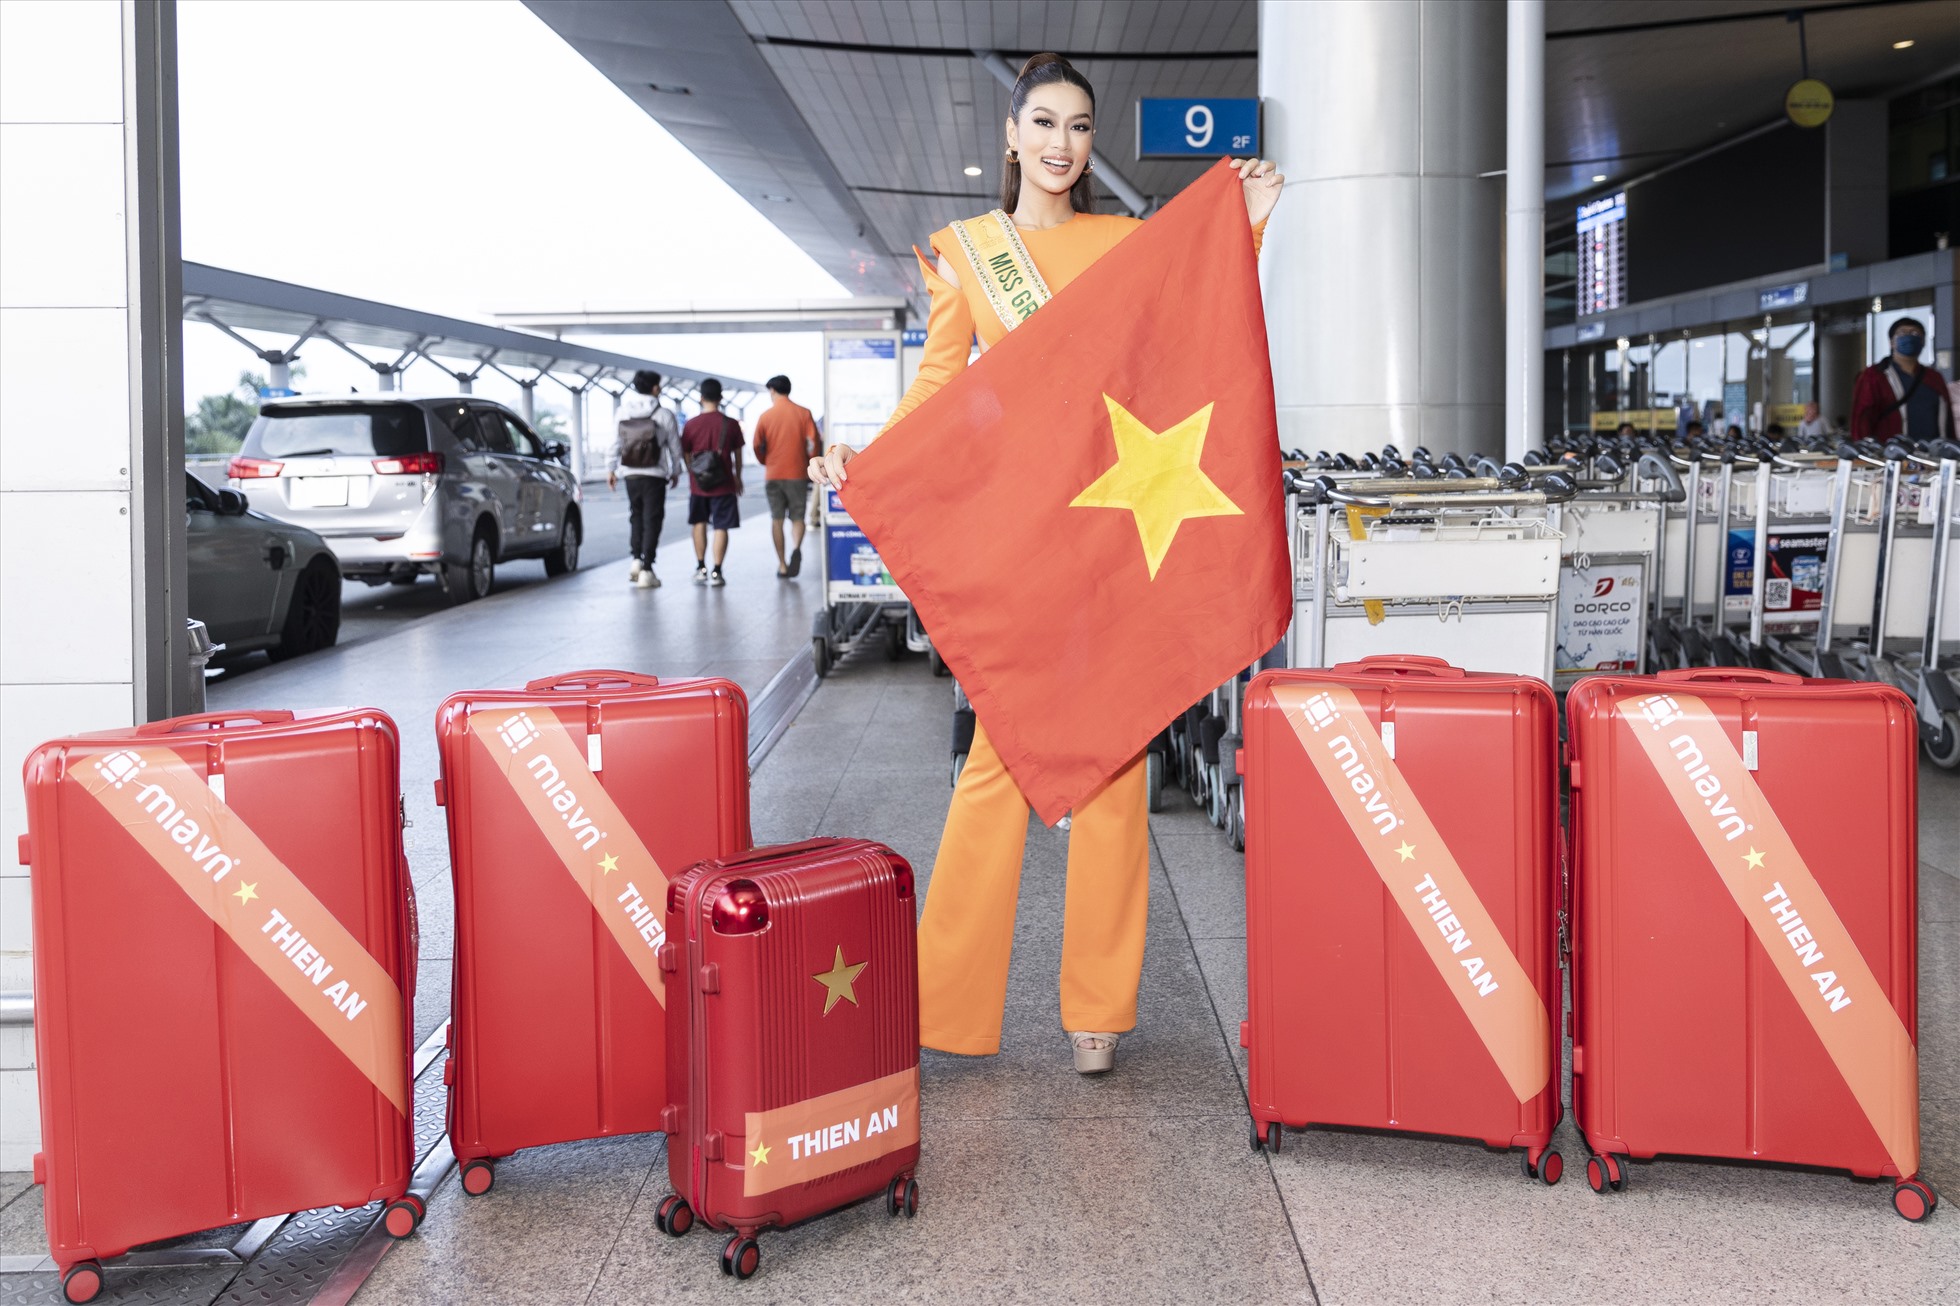 3 ngày sau đăng quang, Thiên Ân đã phải chuẩn bị rất nhiều thứ Trở thành đại diện tiếp theo của Việt Nam tại đấu trường quốc tế, cô nàng cho biết mình phải chuẩn bị rất nhiều thứ từ quần áo cho đến việc tập luyện không ngừng nghỉ. Mỗi ngày chỉ có 2 tiếng để ngủ.